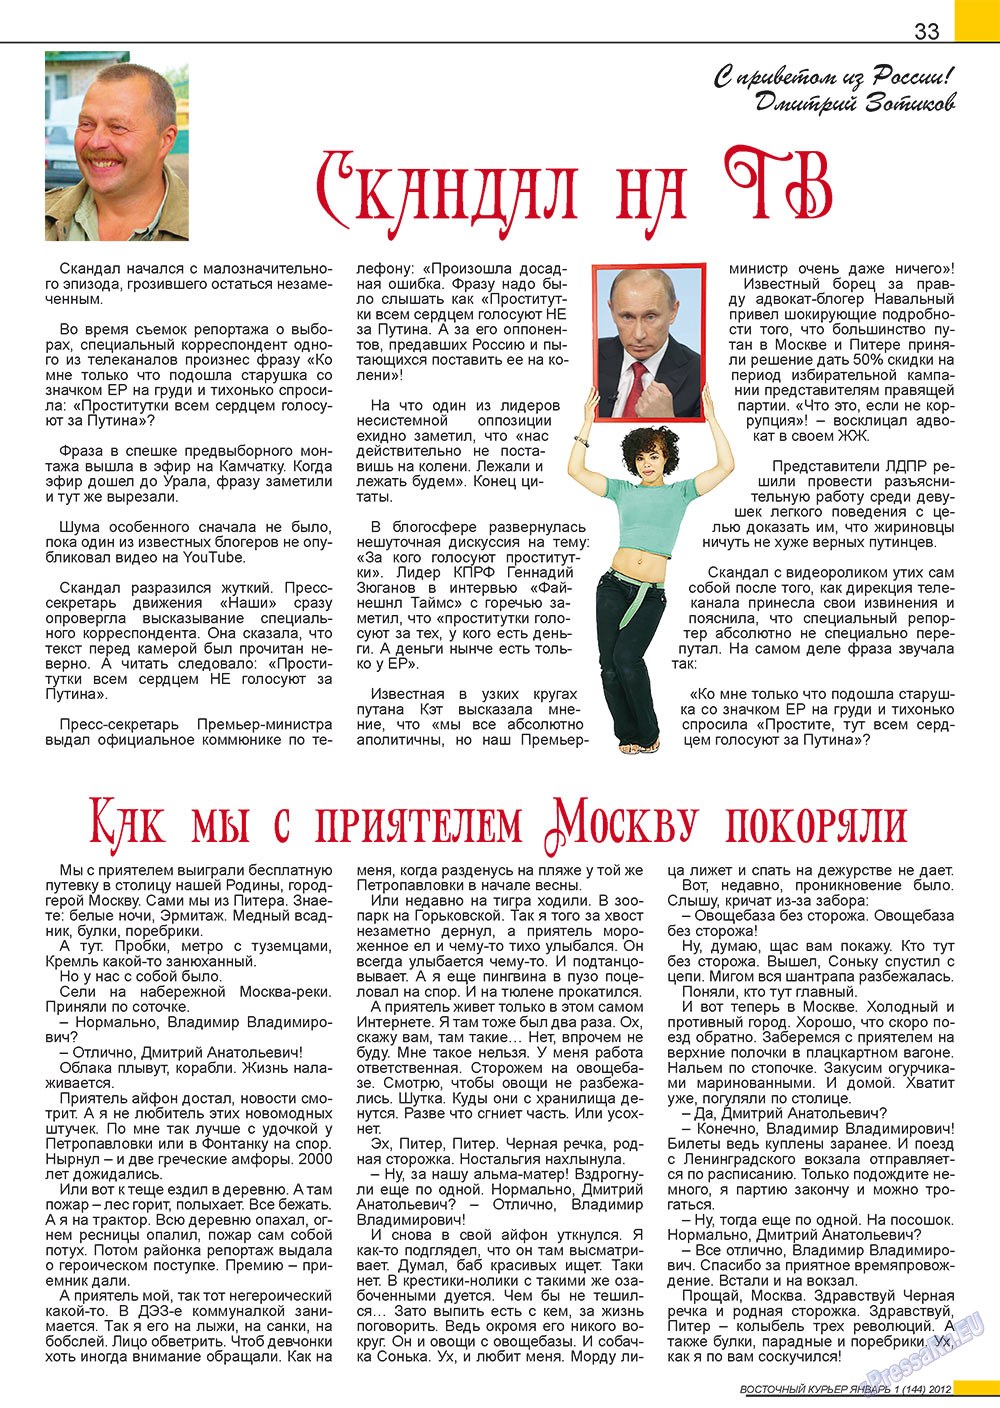 Восточный курьер (журнал). 2012 год, номер 1, стр. 33